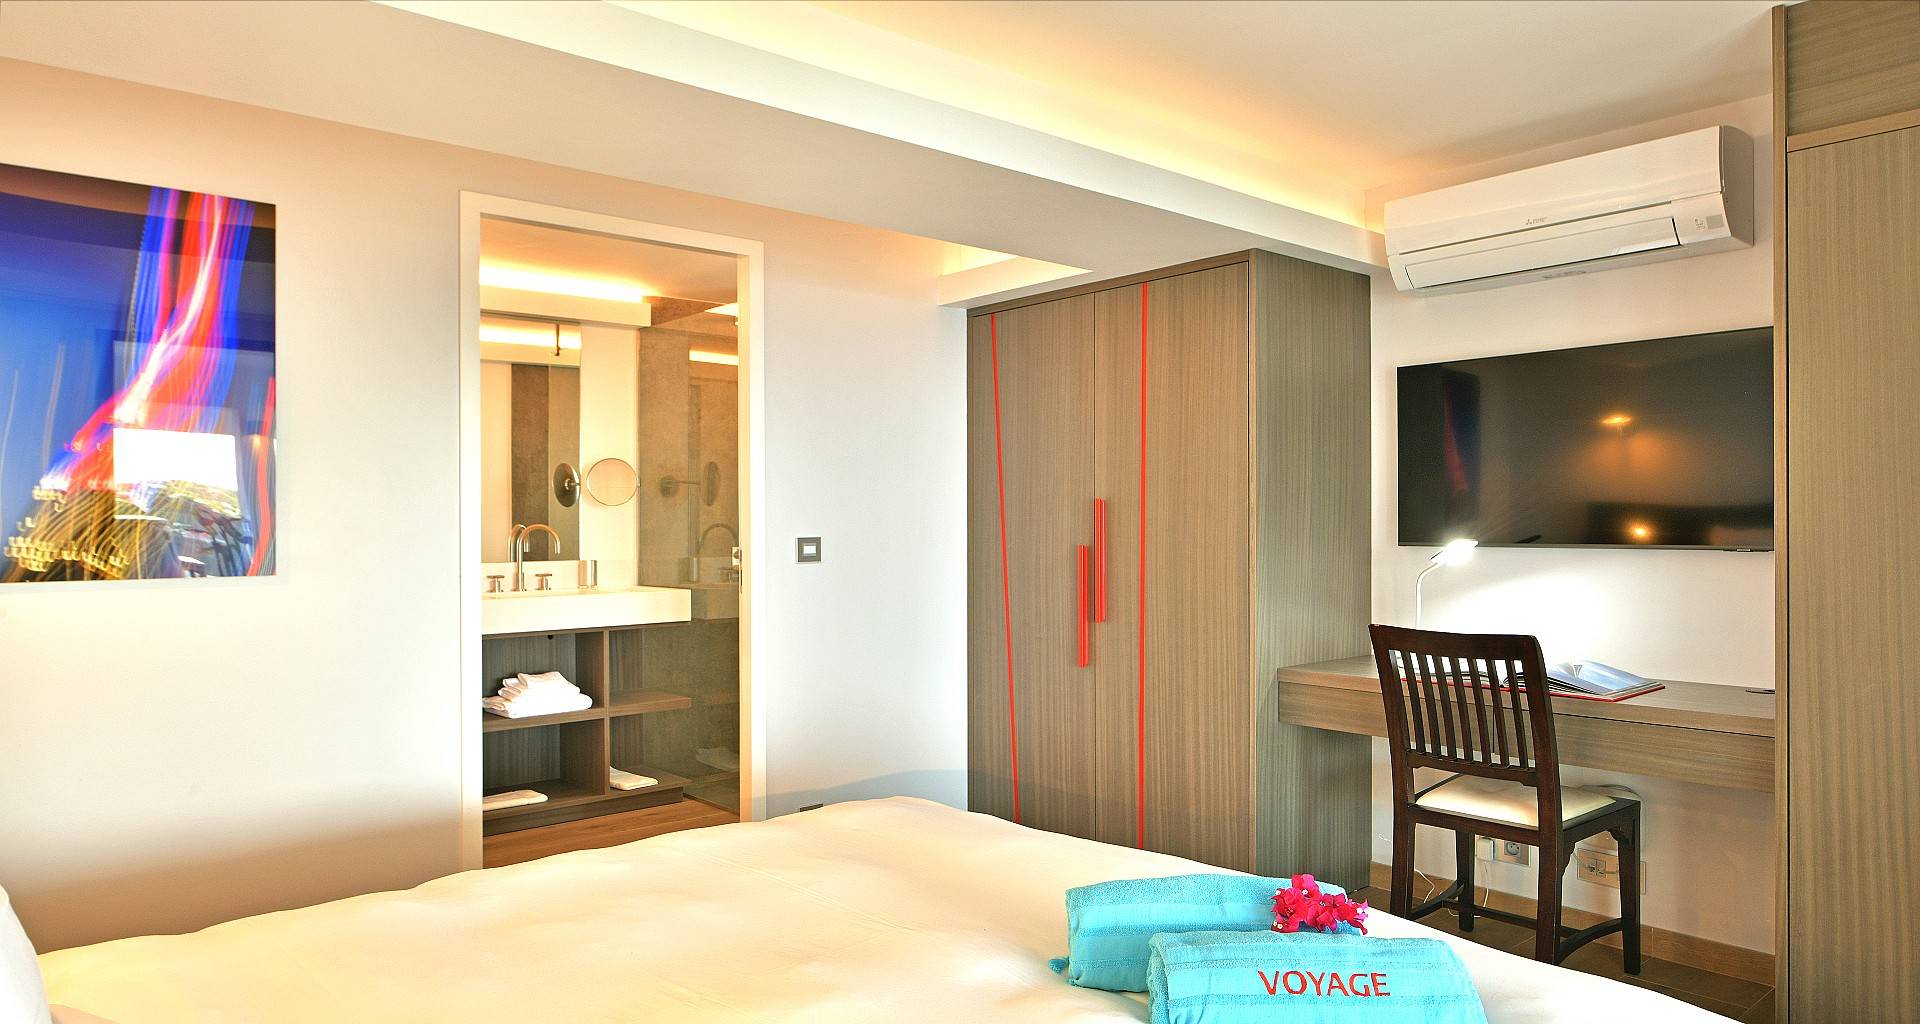 Villa Voyage Bedroom 4